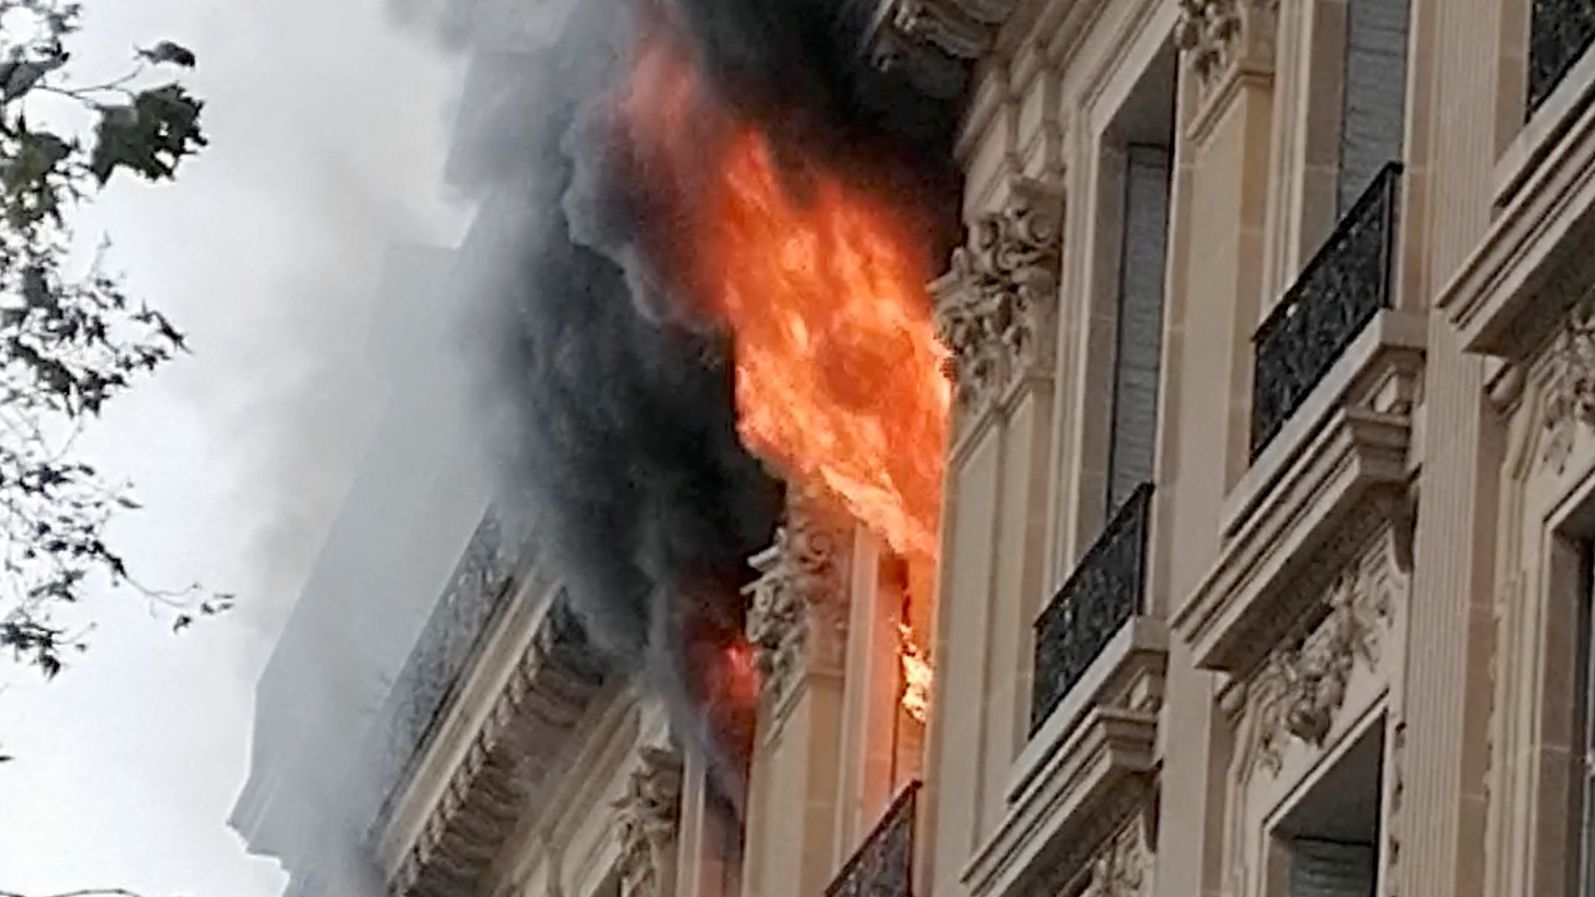 پاریس در دود و آتش